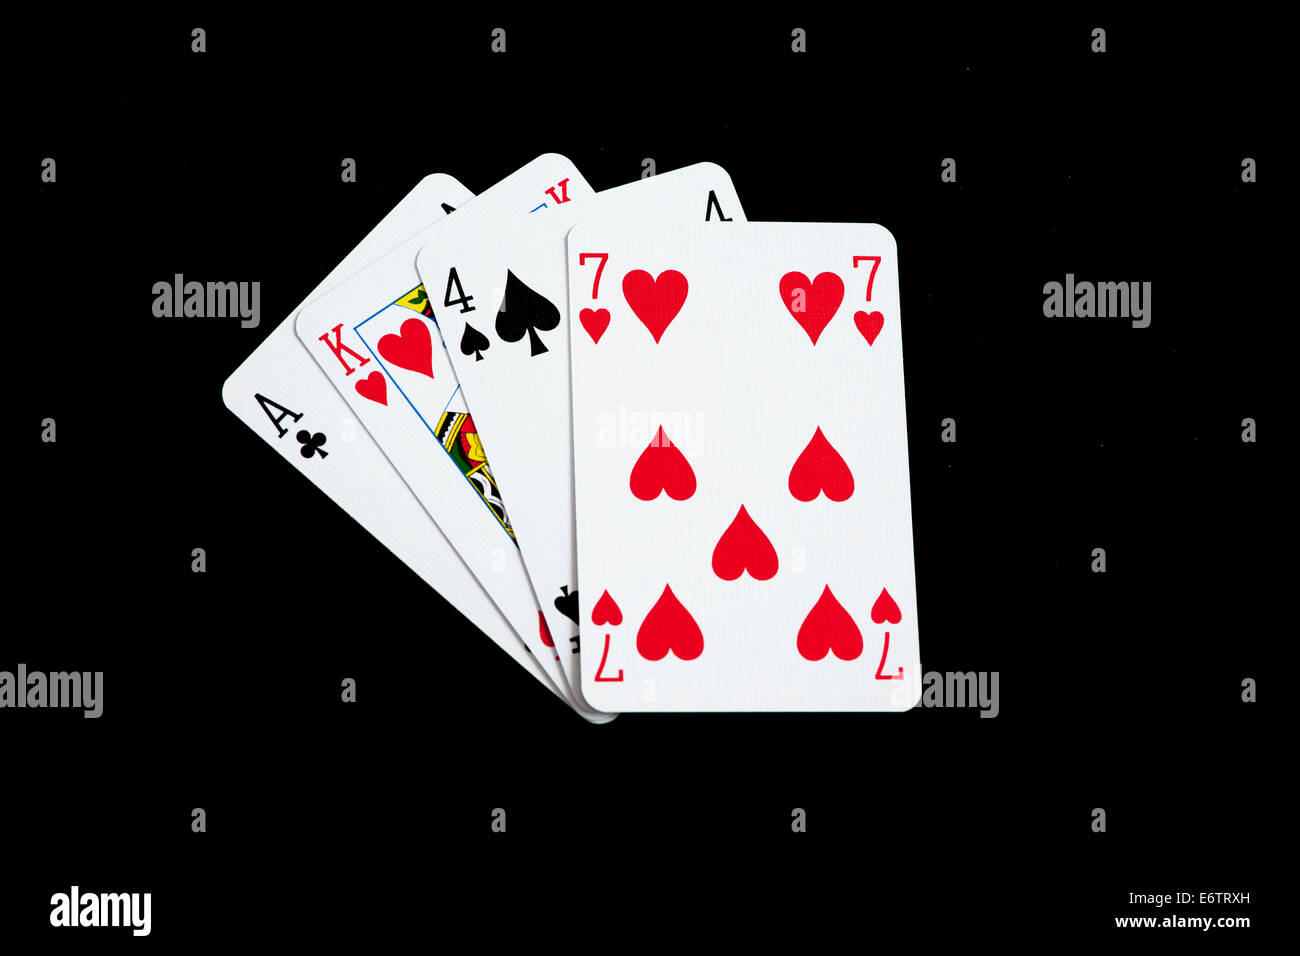 Poker-Begriff ak47 nannte dies nennt man einen Sprache-Witz Stockfoto